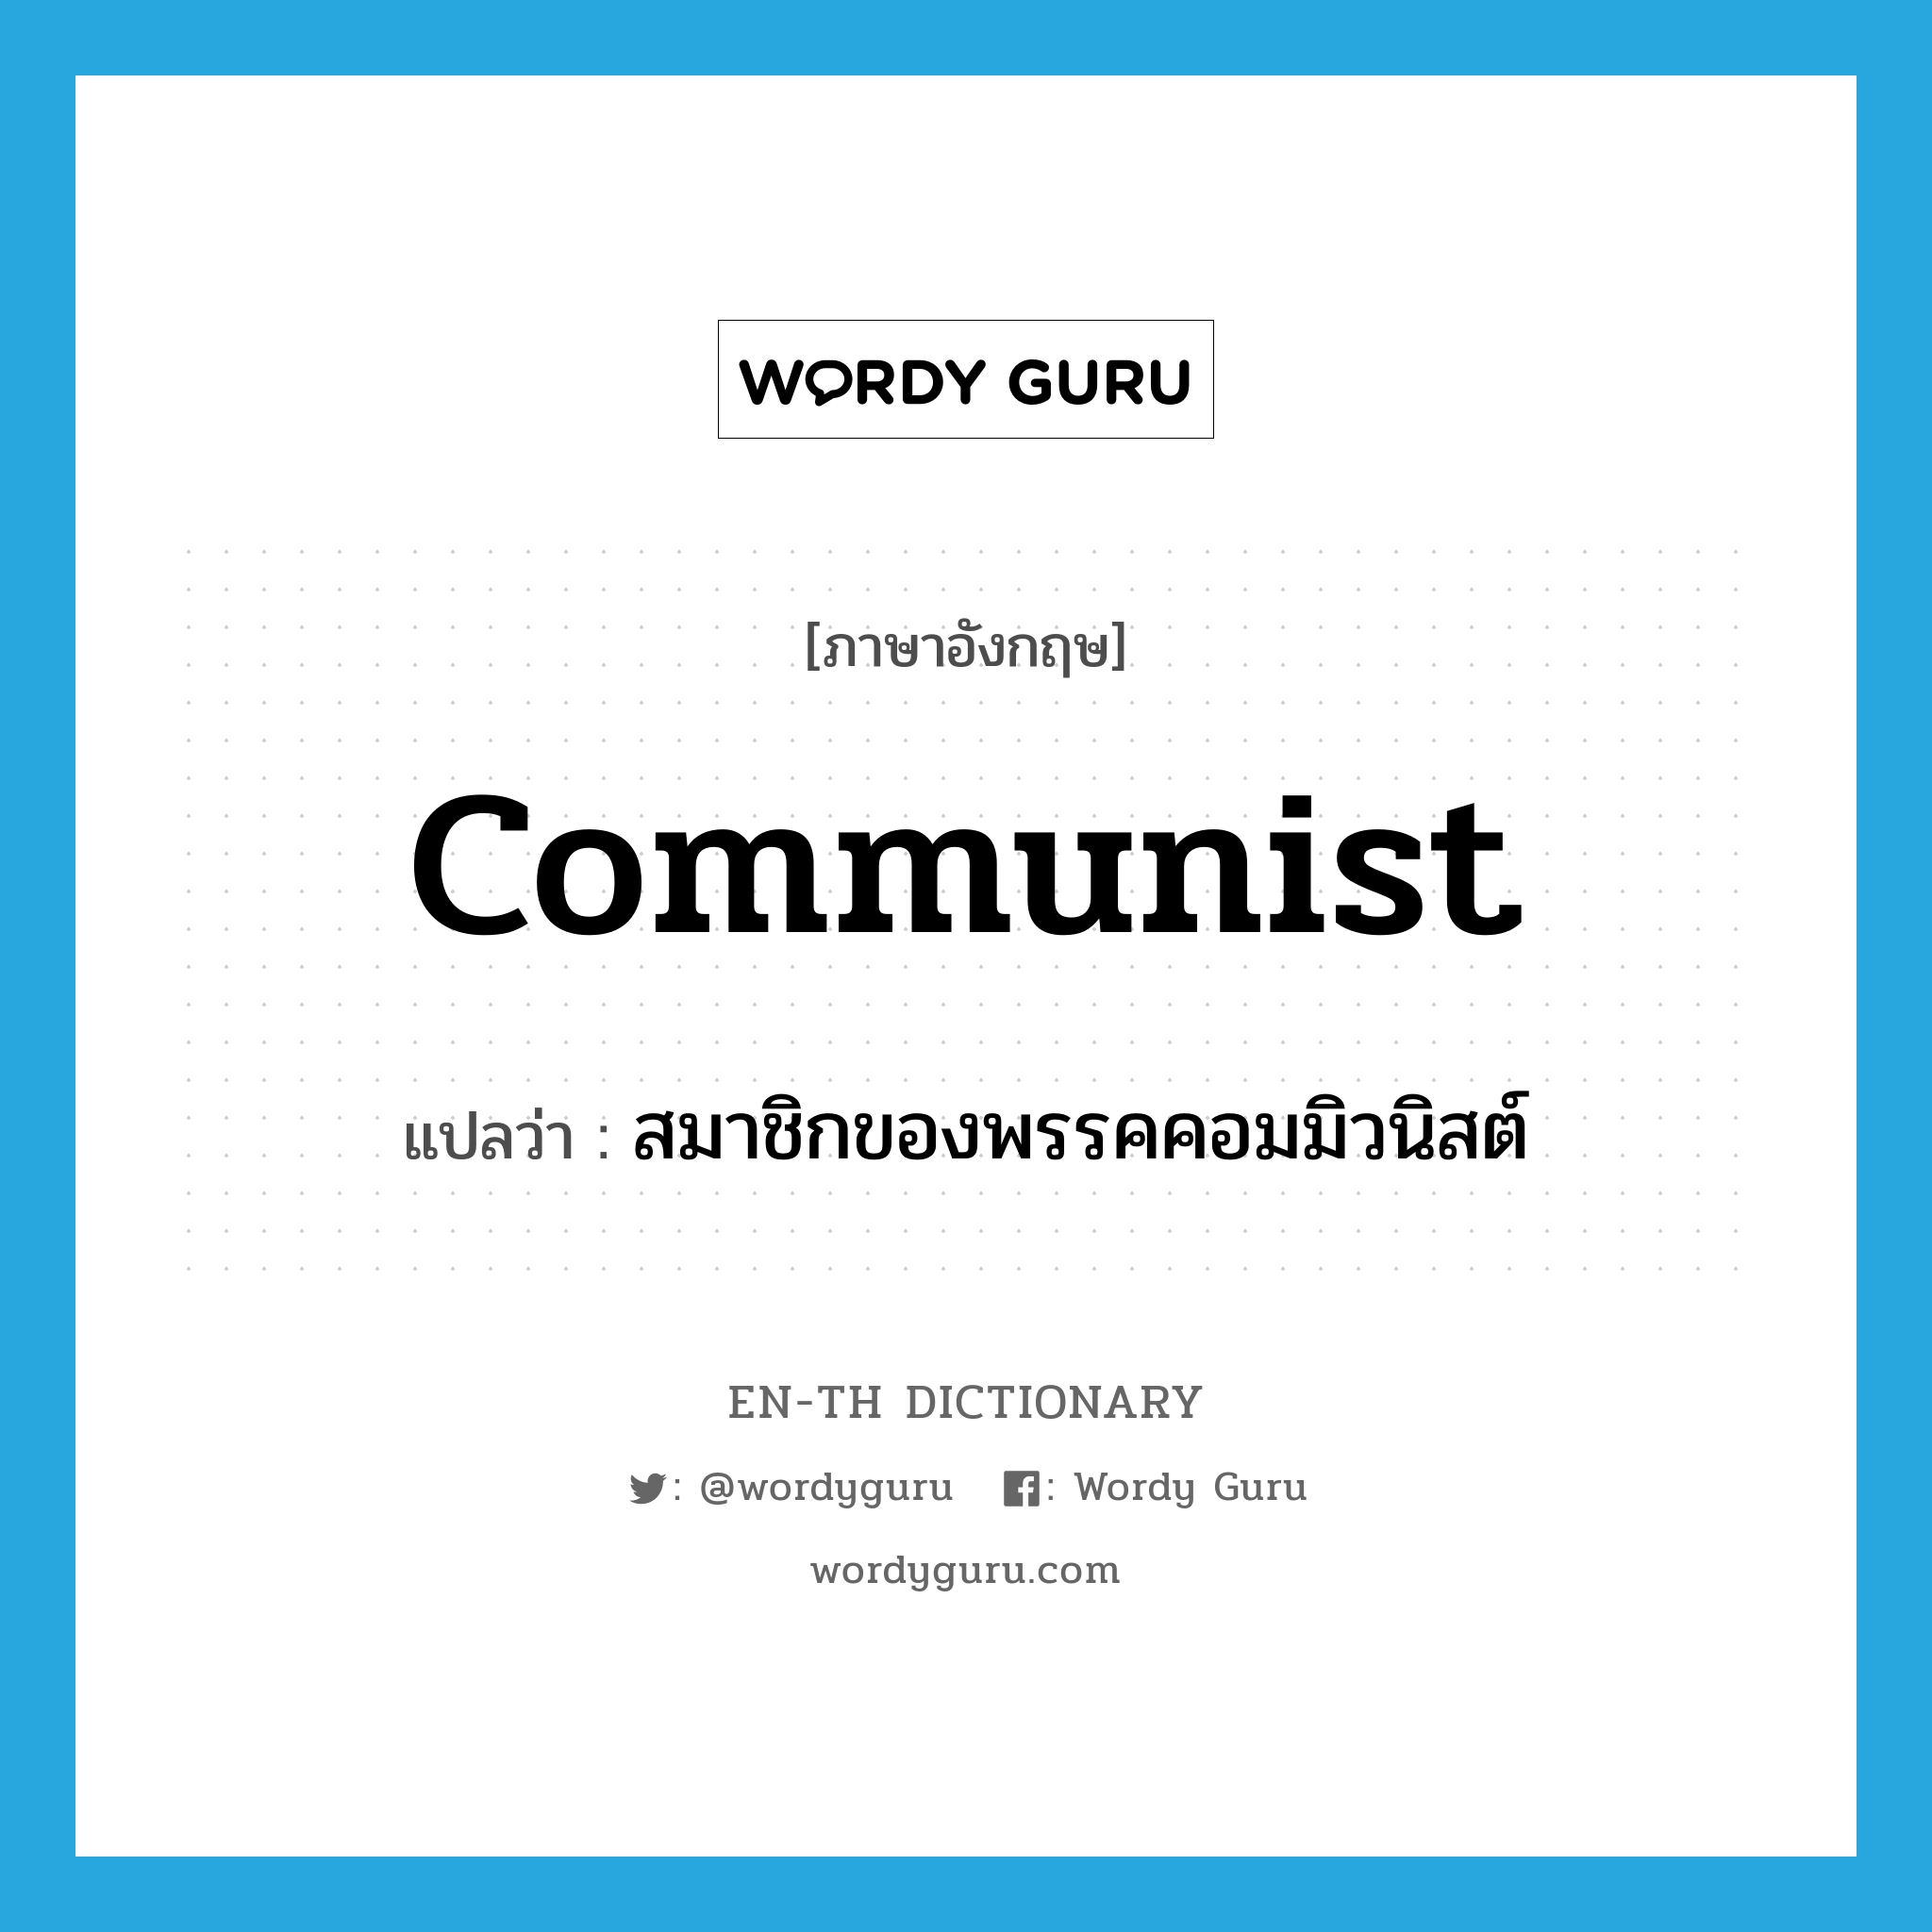 สมาชิกของพรรคคอมมิวนิสต์ ภาษาอังกฤษ?, คำศัพท์ภาษาอังกฤษ สมาชิกของพรรคคอมมิวนิสต์ แปลว่า communist ประเภท N หมวด N